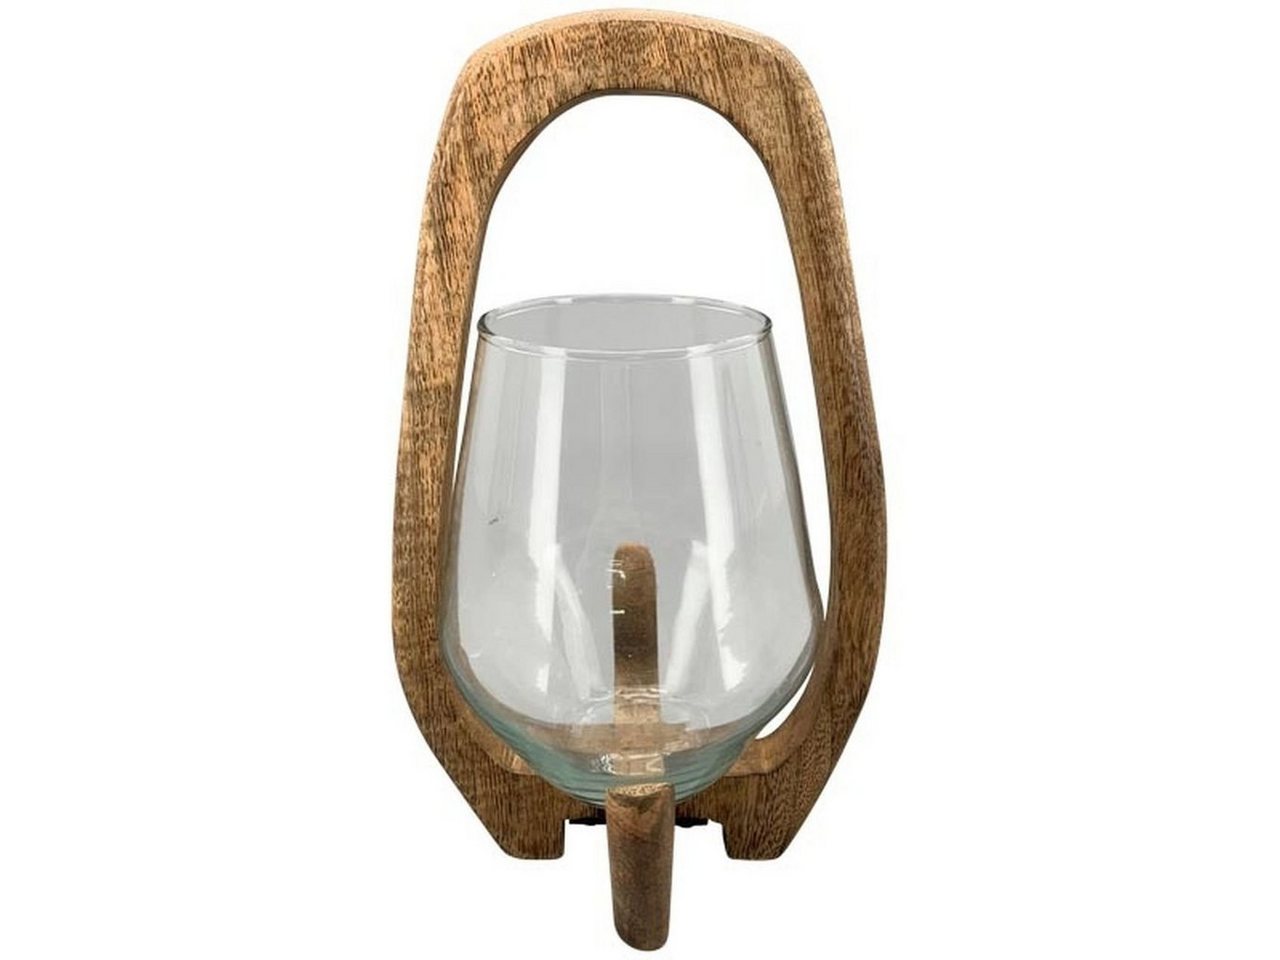 Small-Preis Teelichthalter Windlicht aus Holz mit Glaseinsatz in 3 Größen wählbar von Small-Preis